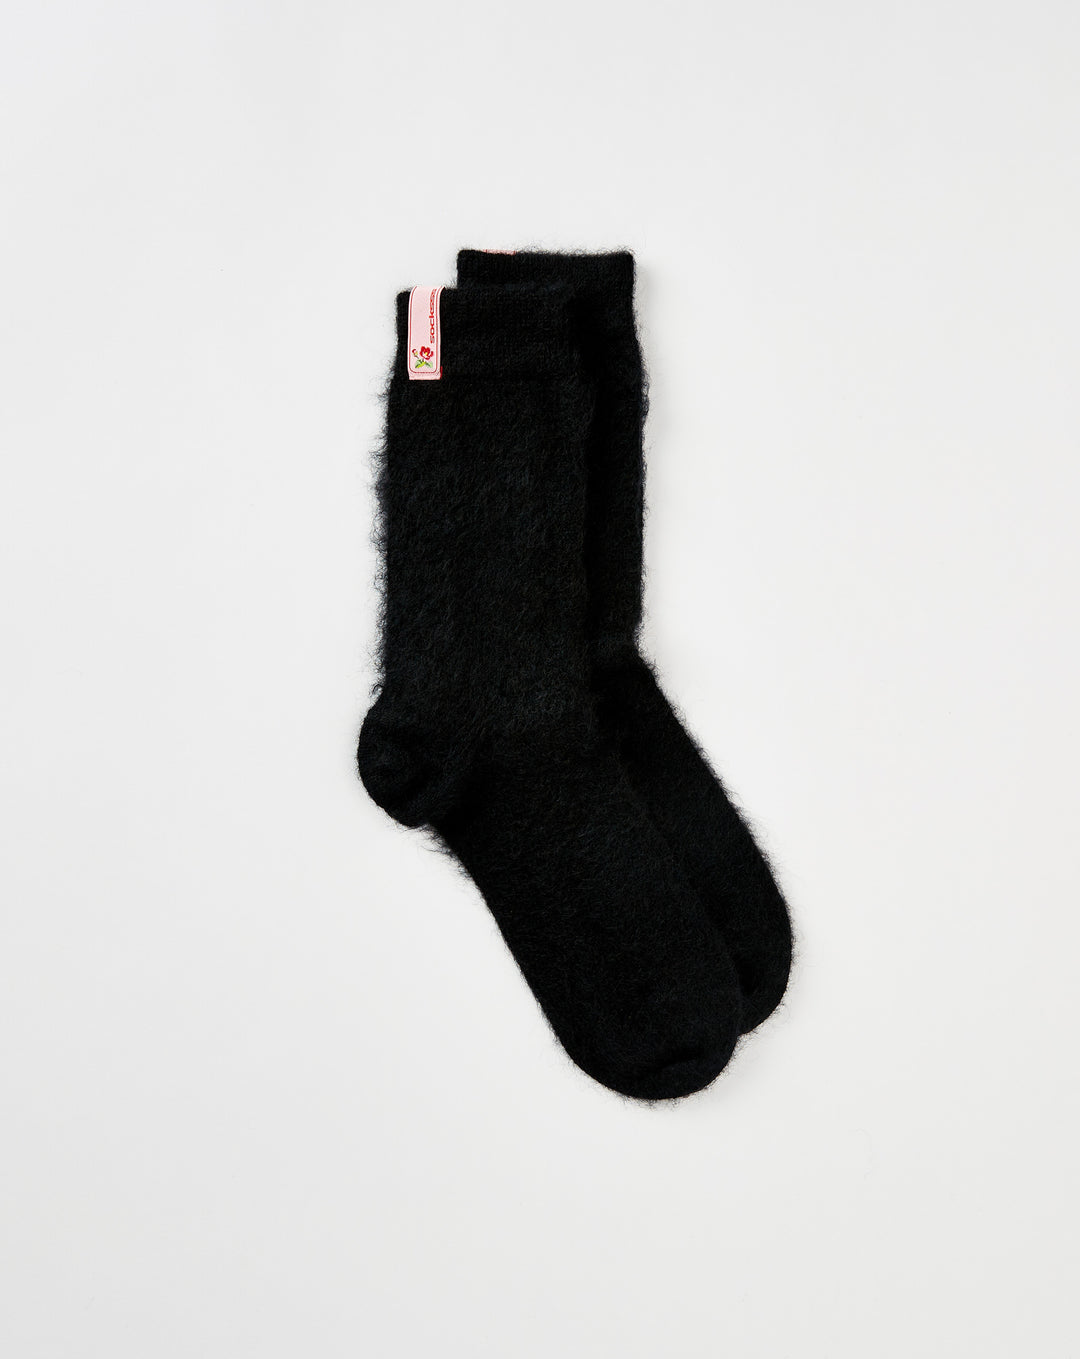 SOCKSSS Phantom Socks  - Cheap Urlfreeze Jordan outlet